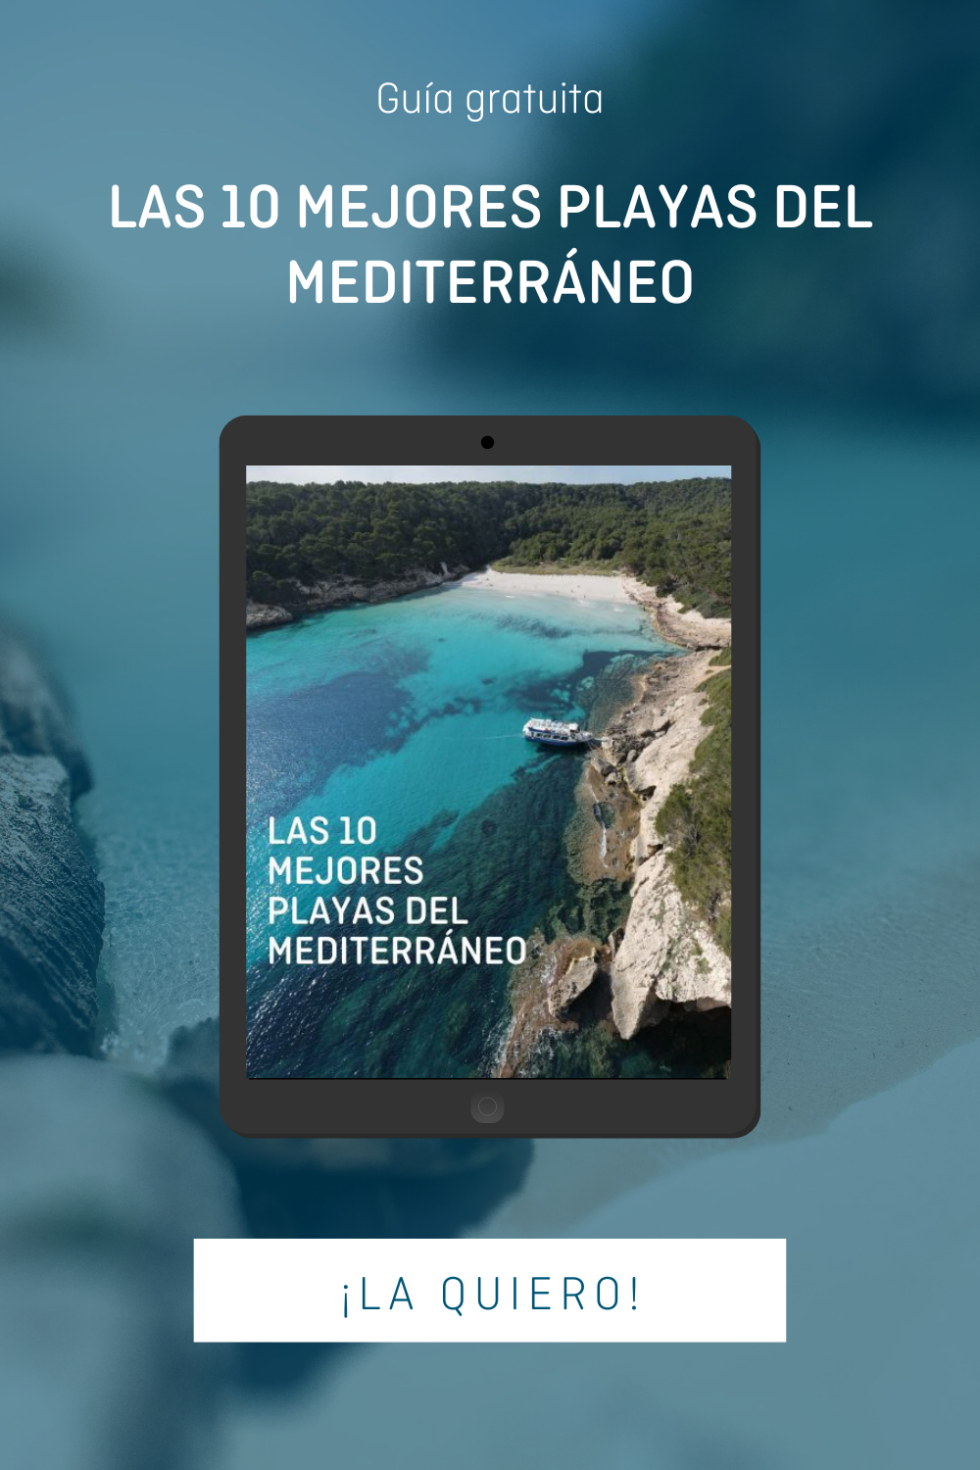 Las 10 mejores playas del mediterráno